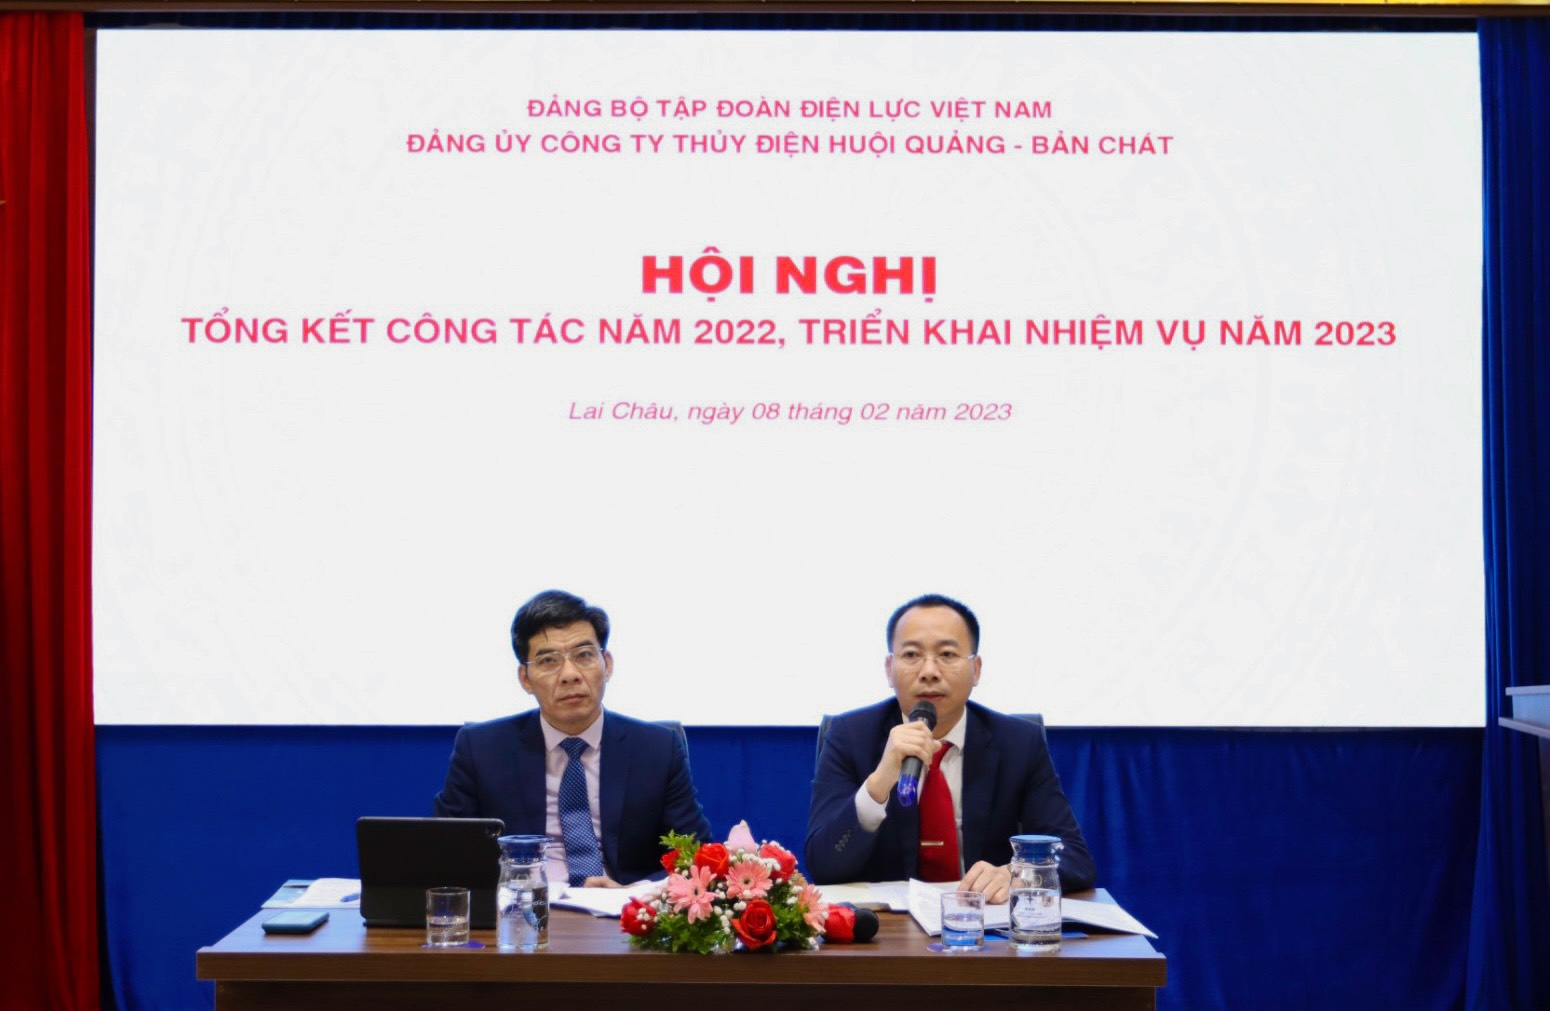 Đảng bộ Công ty Thủy điện Huội Quảng - Bản Chát tổng kết công tác năm 2022 và triển khai nhiệm vụ năm 2023